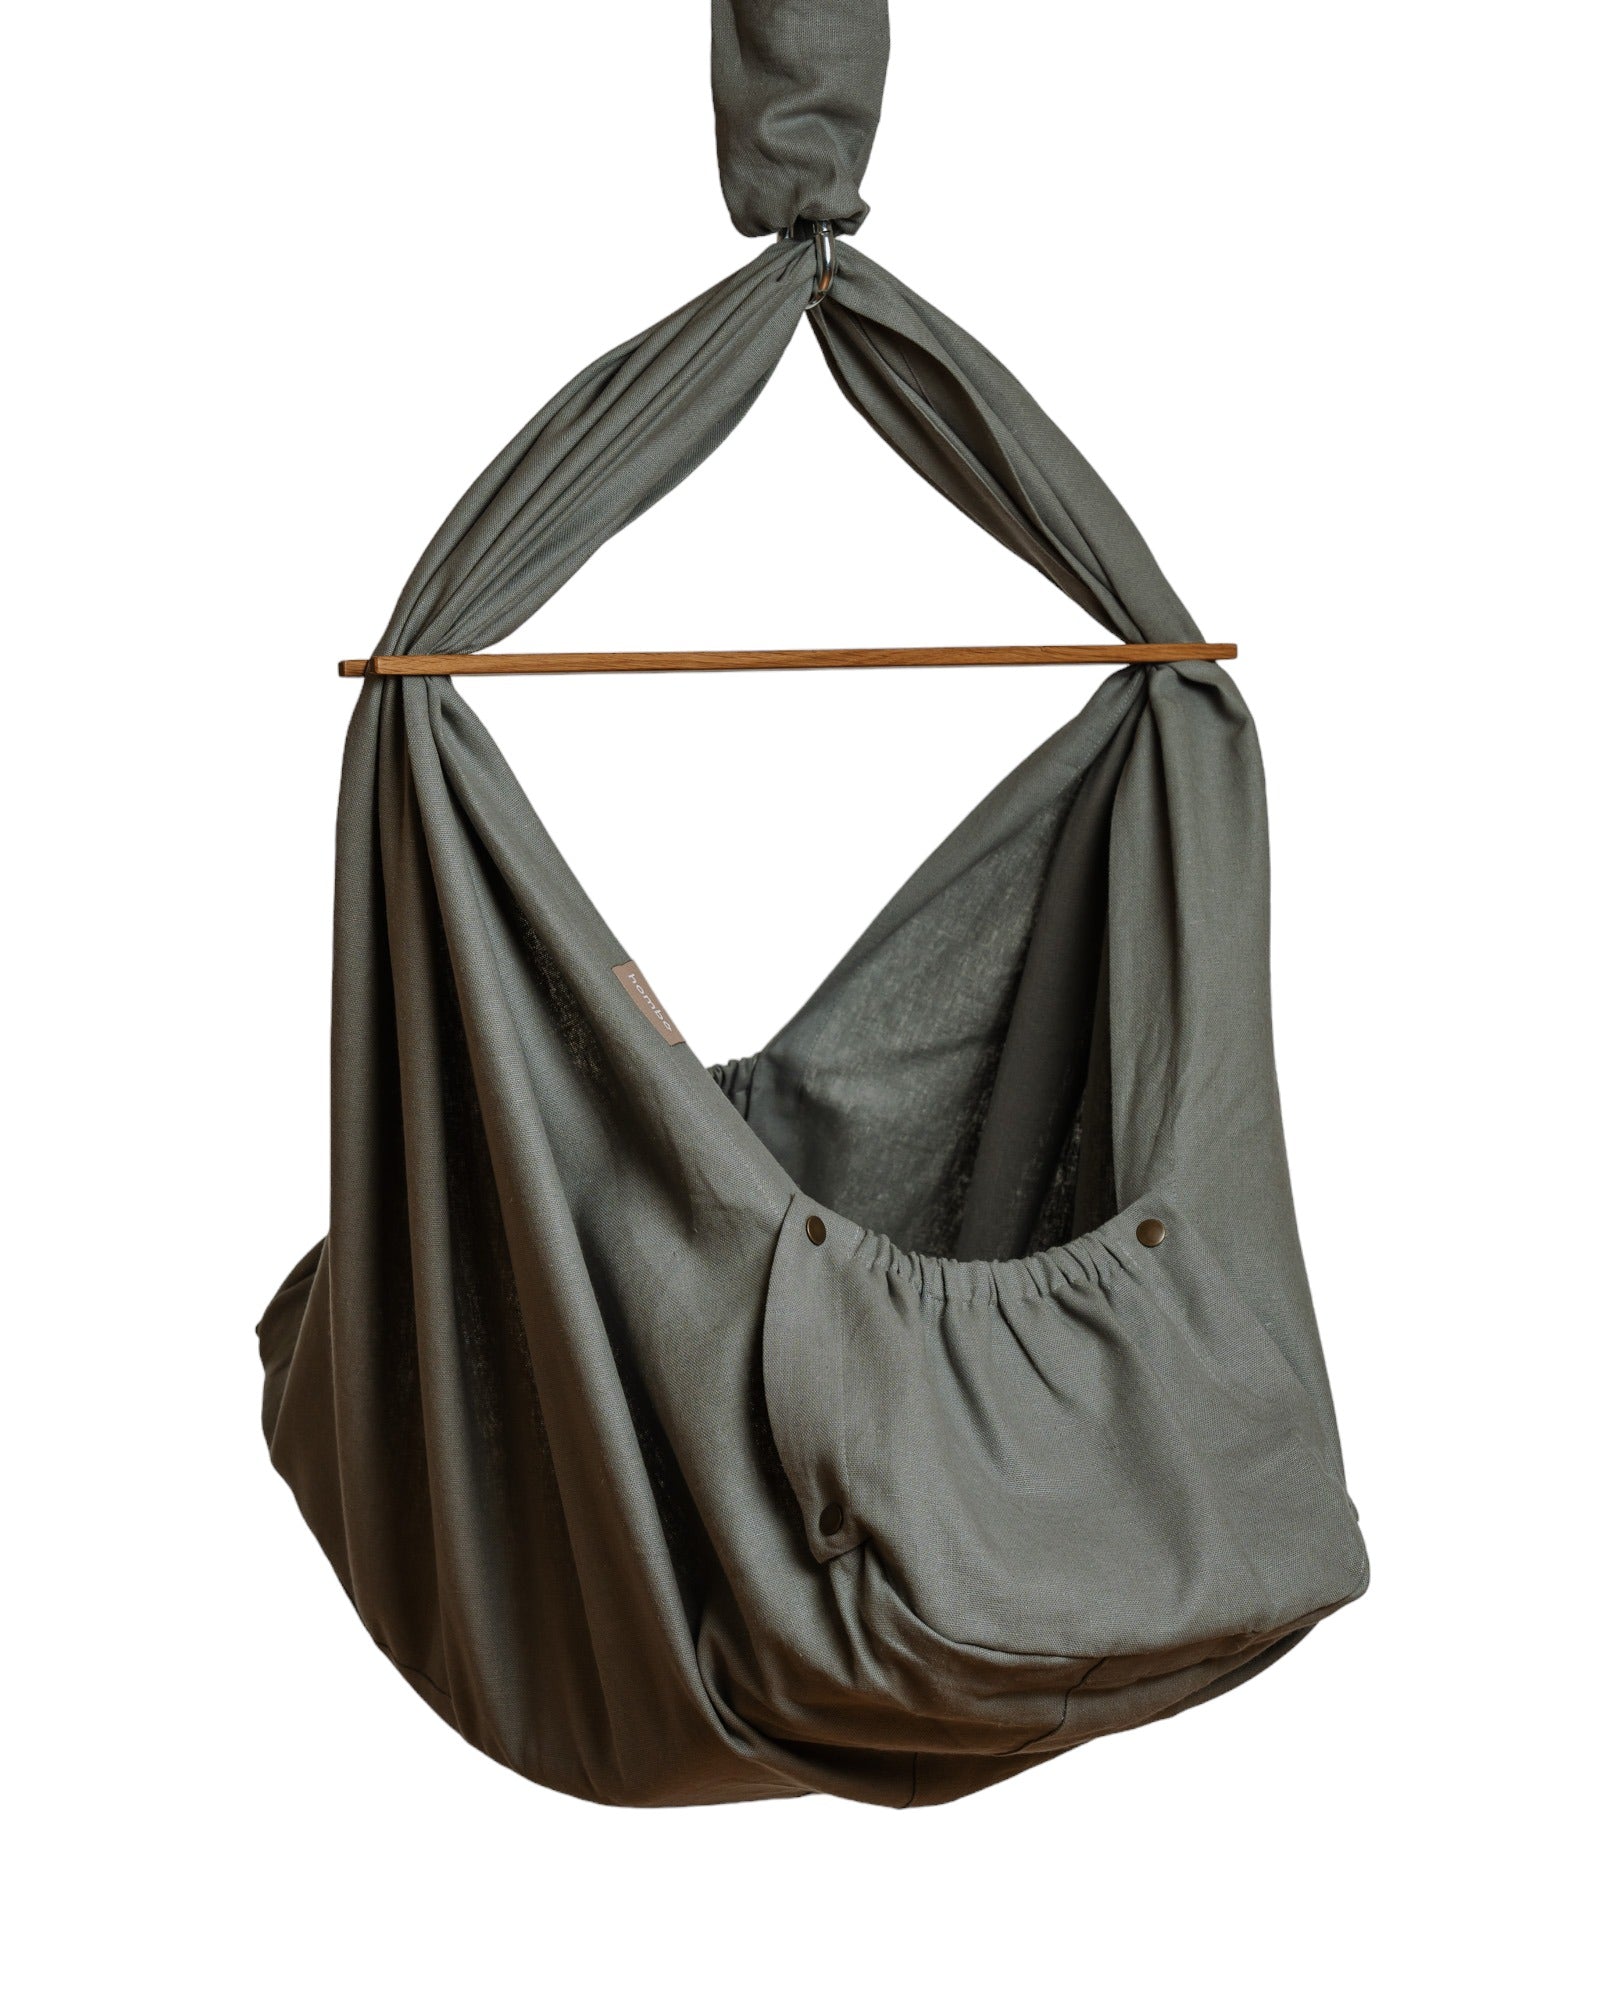 homba® baby hanging cradle linen grey